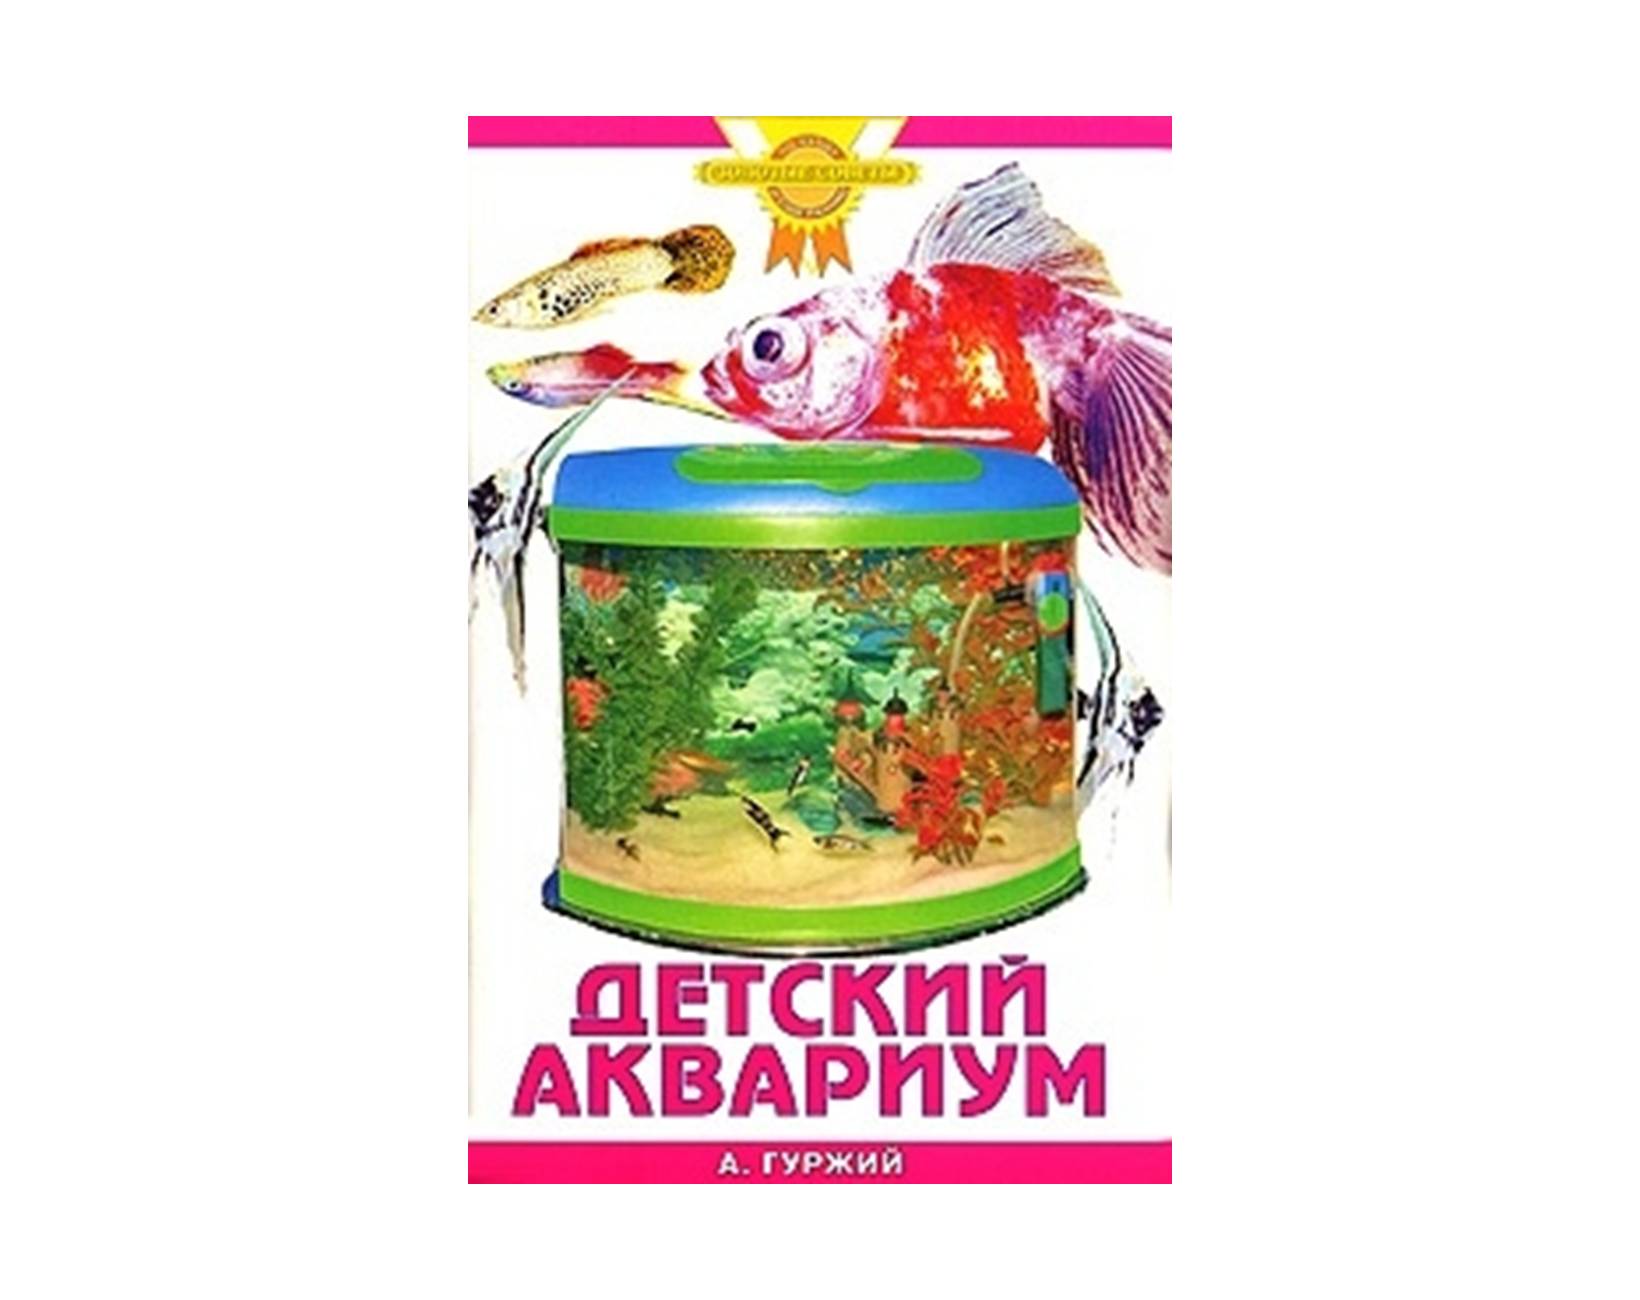 Детский аквариум купить. Магазин Лавка аквариумиста. Детский аквариум. Книга для начинающих аквариумистов.